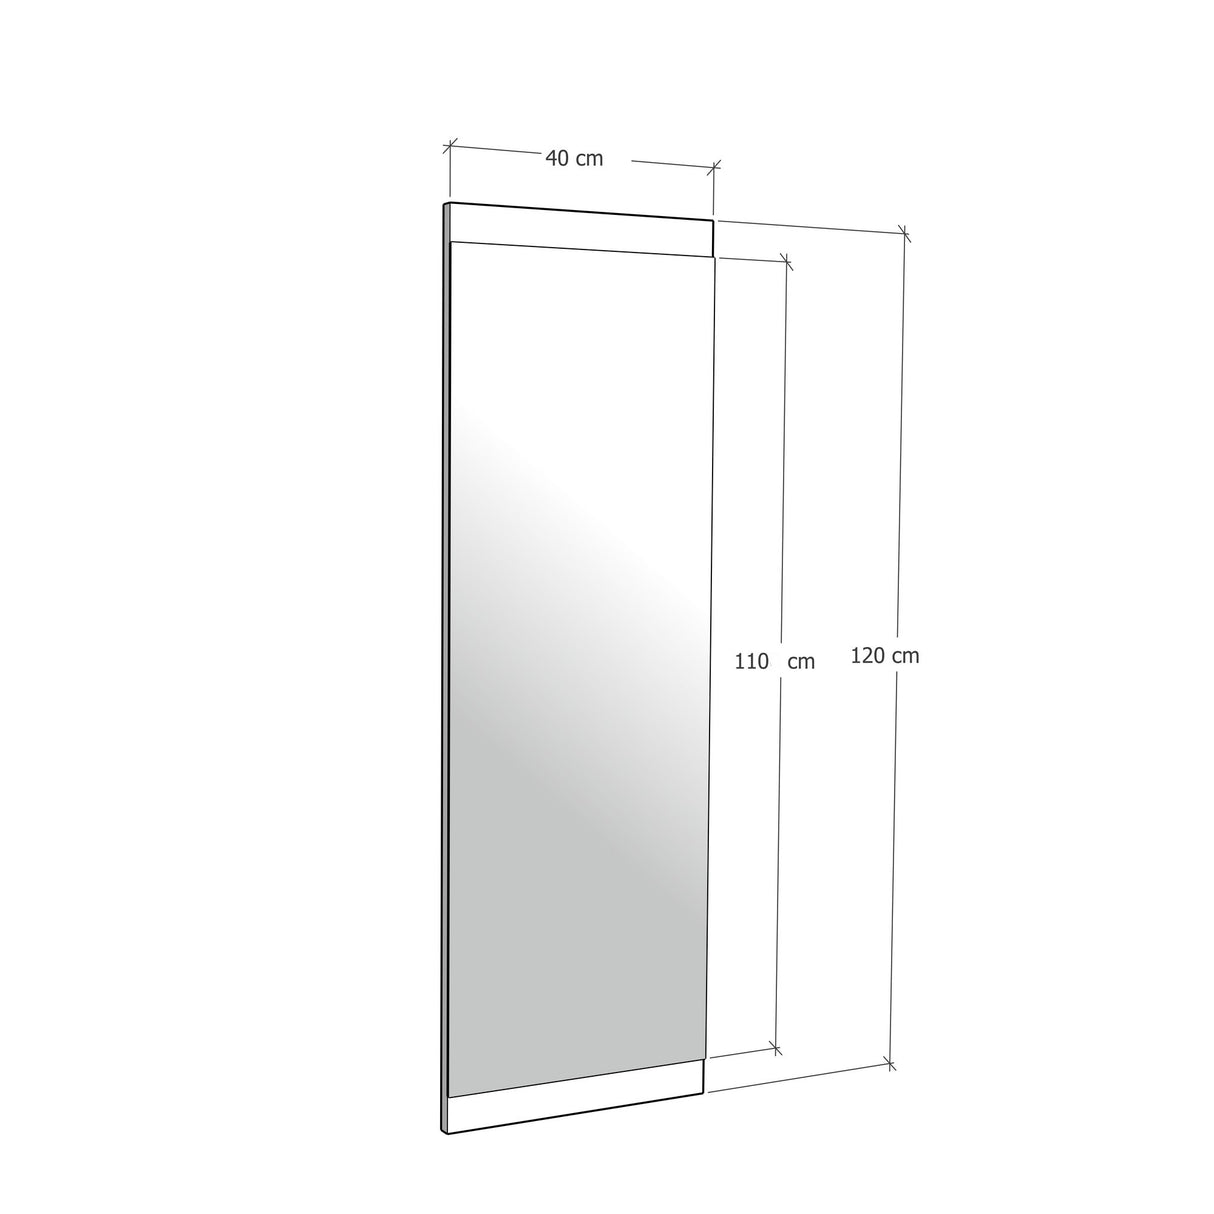 Oglindă Boy Aynası Dekoratif Basic Ceviz 40x120, Nuc, 2x40x120 cm